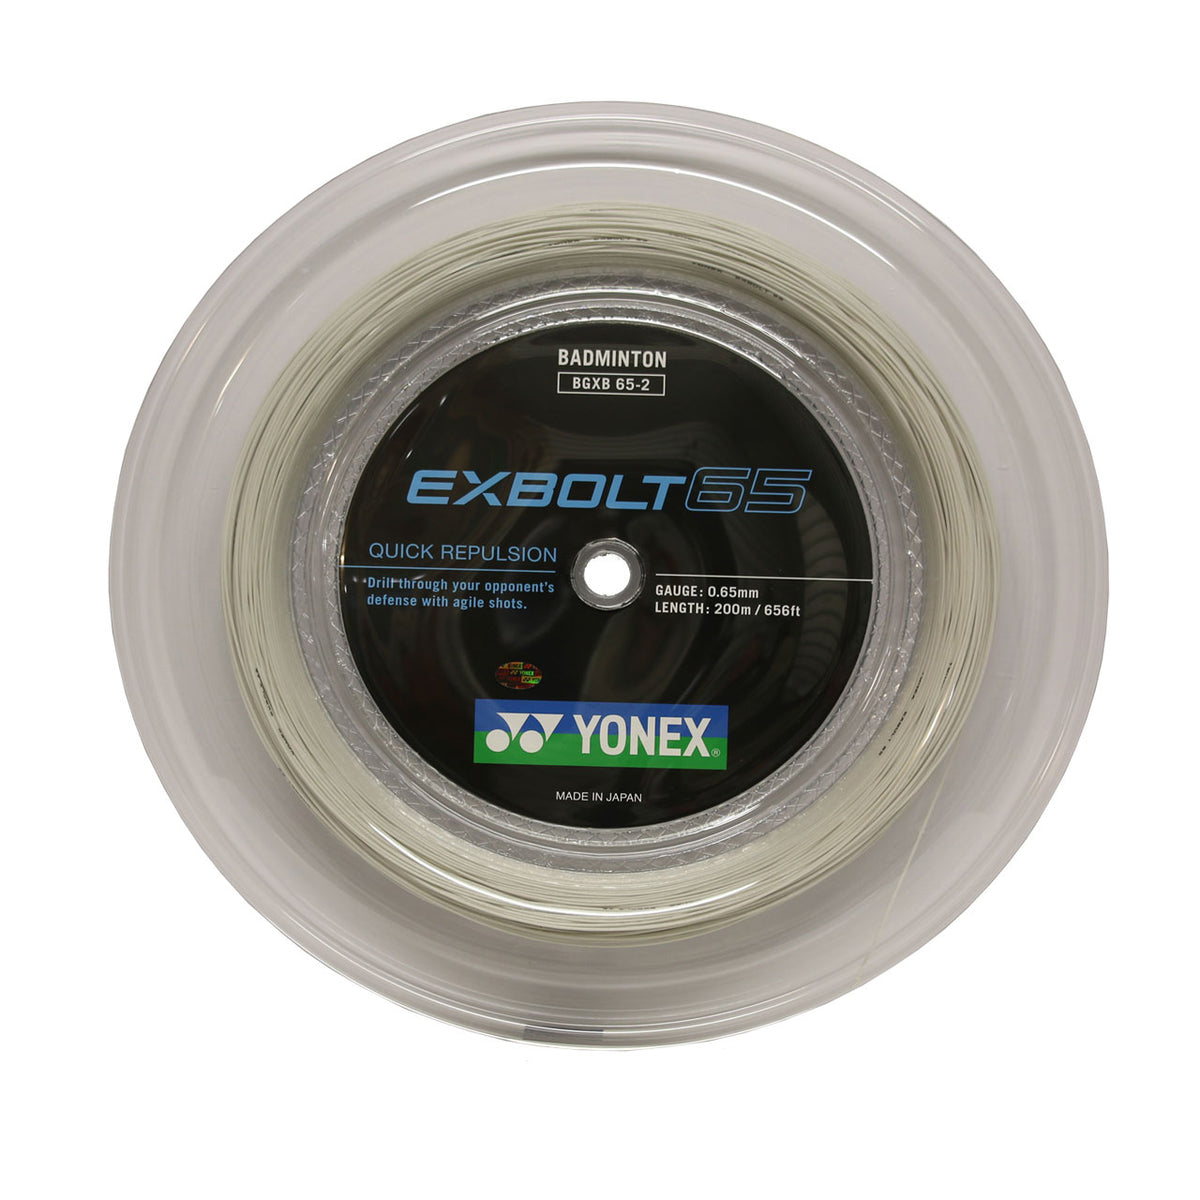 YONEX EX BOLT 65 弦（200 米卷线器）白色